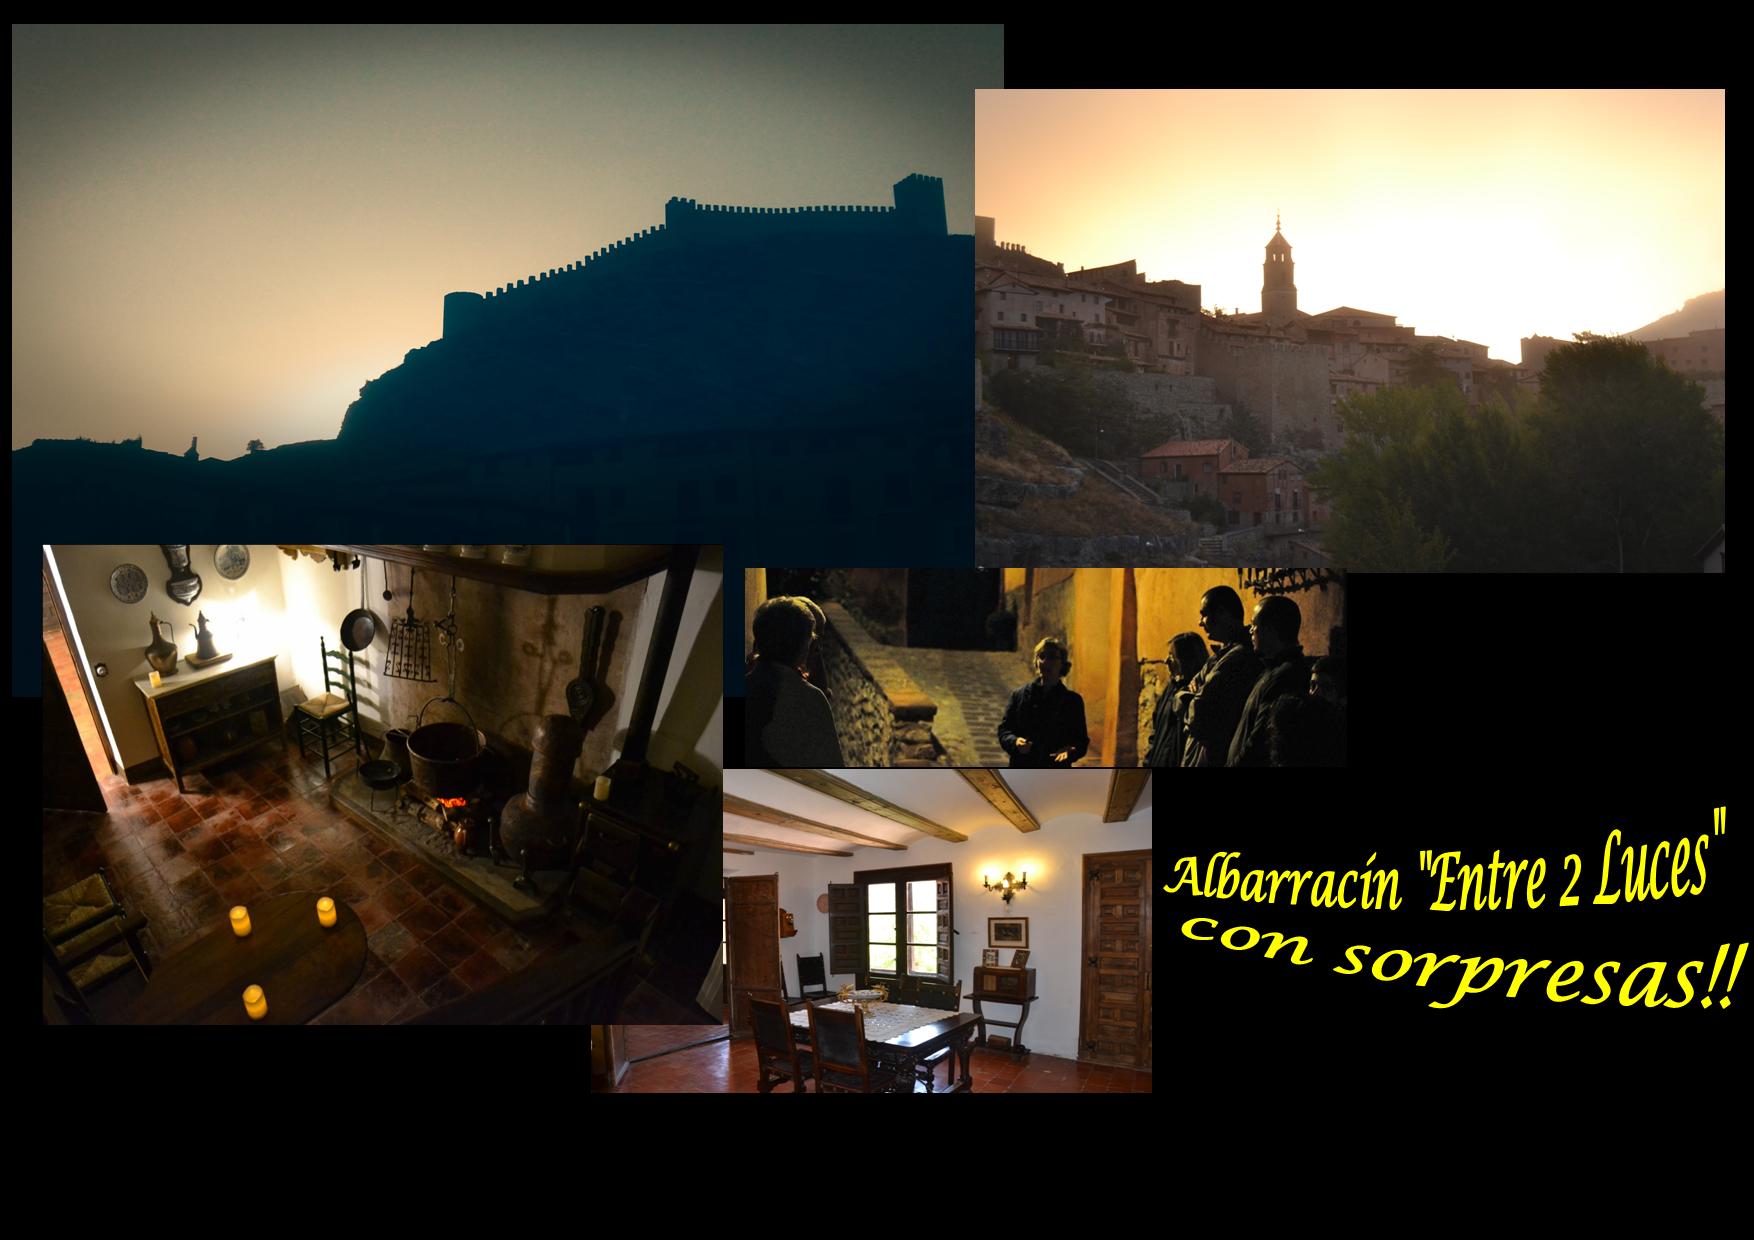 El 10 de Marzo…ESPECIAL Albarracín «Entre 2 Luces»